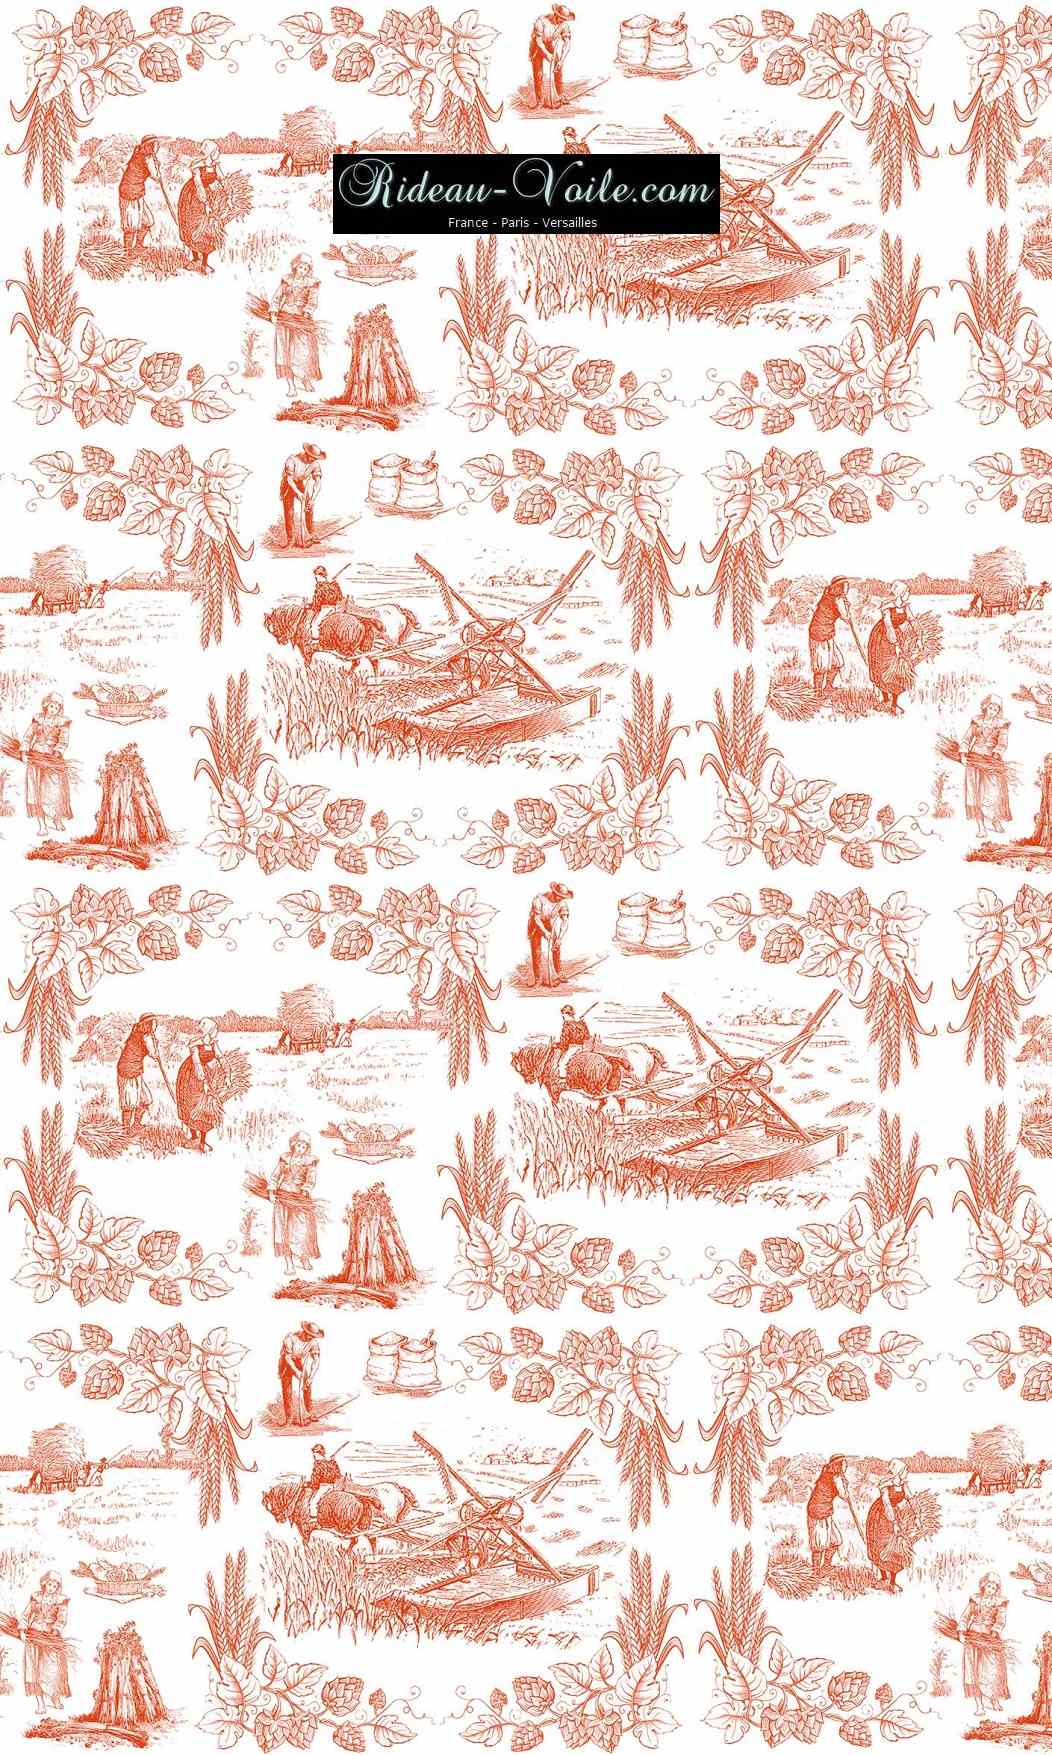 Toile de Jouy tissu au mètre ameublement textile Paris Versailles Yvelines decoration french pattern haut gamme orange